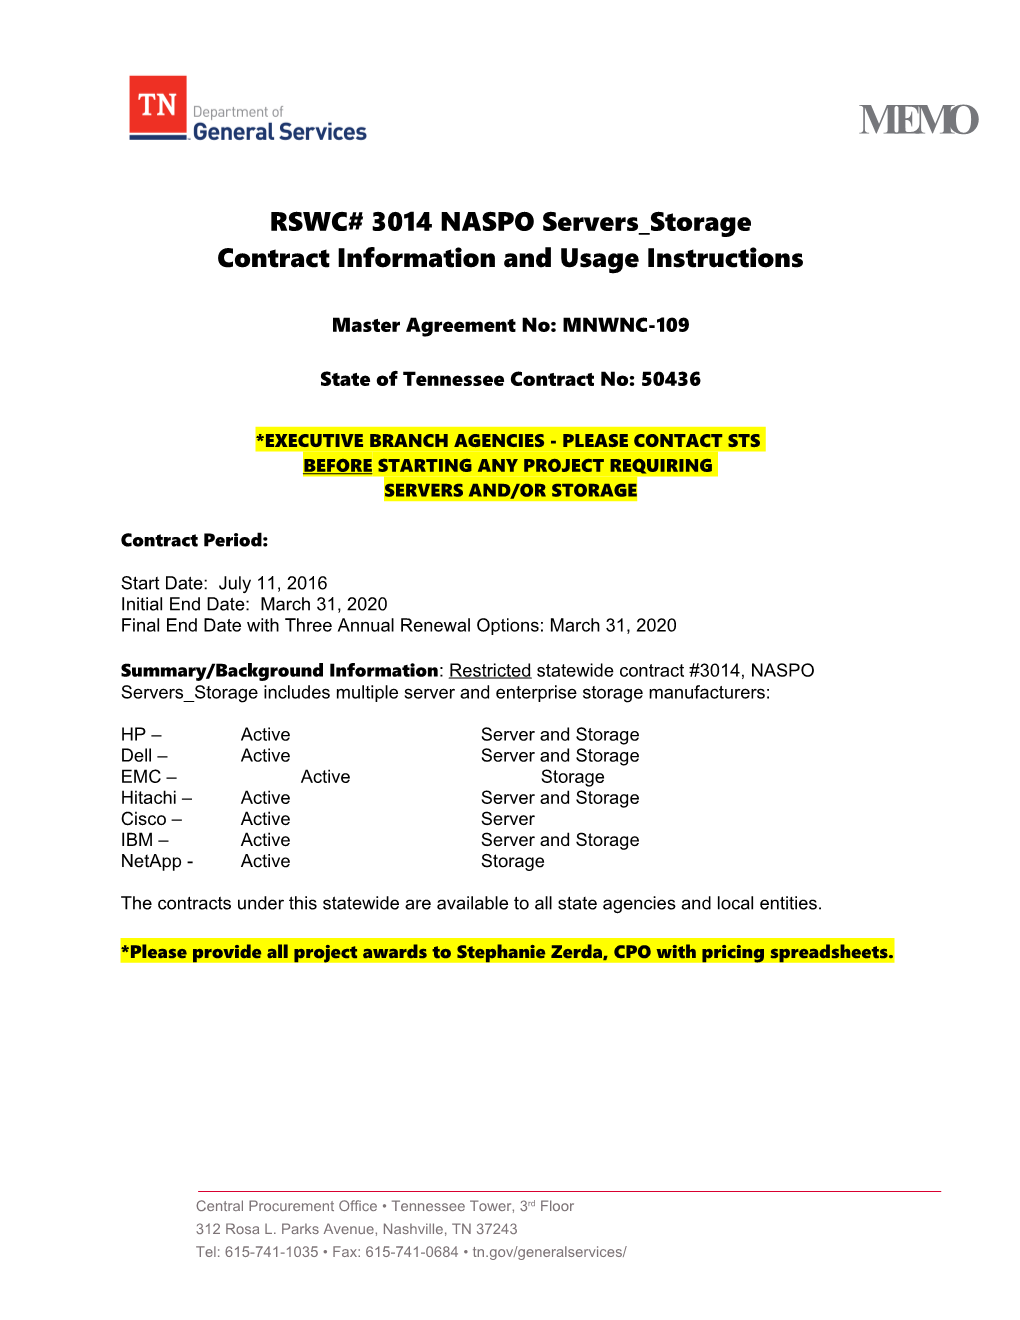 RSWC# 3014 NASPO Servers Storage